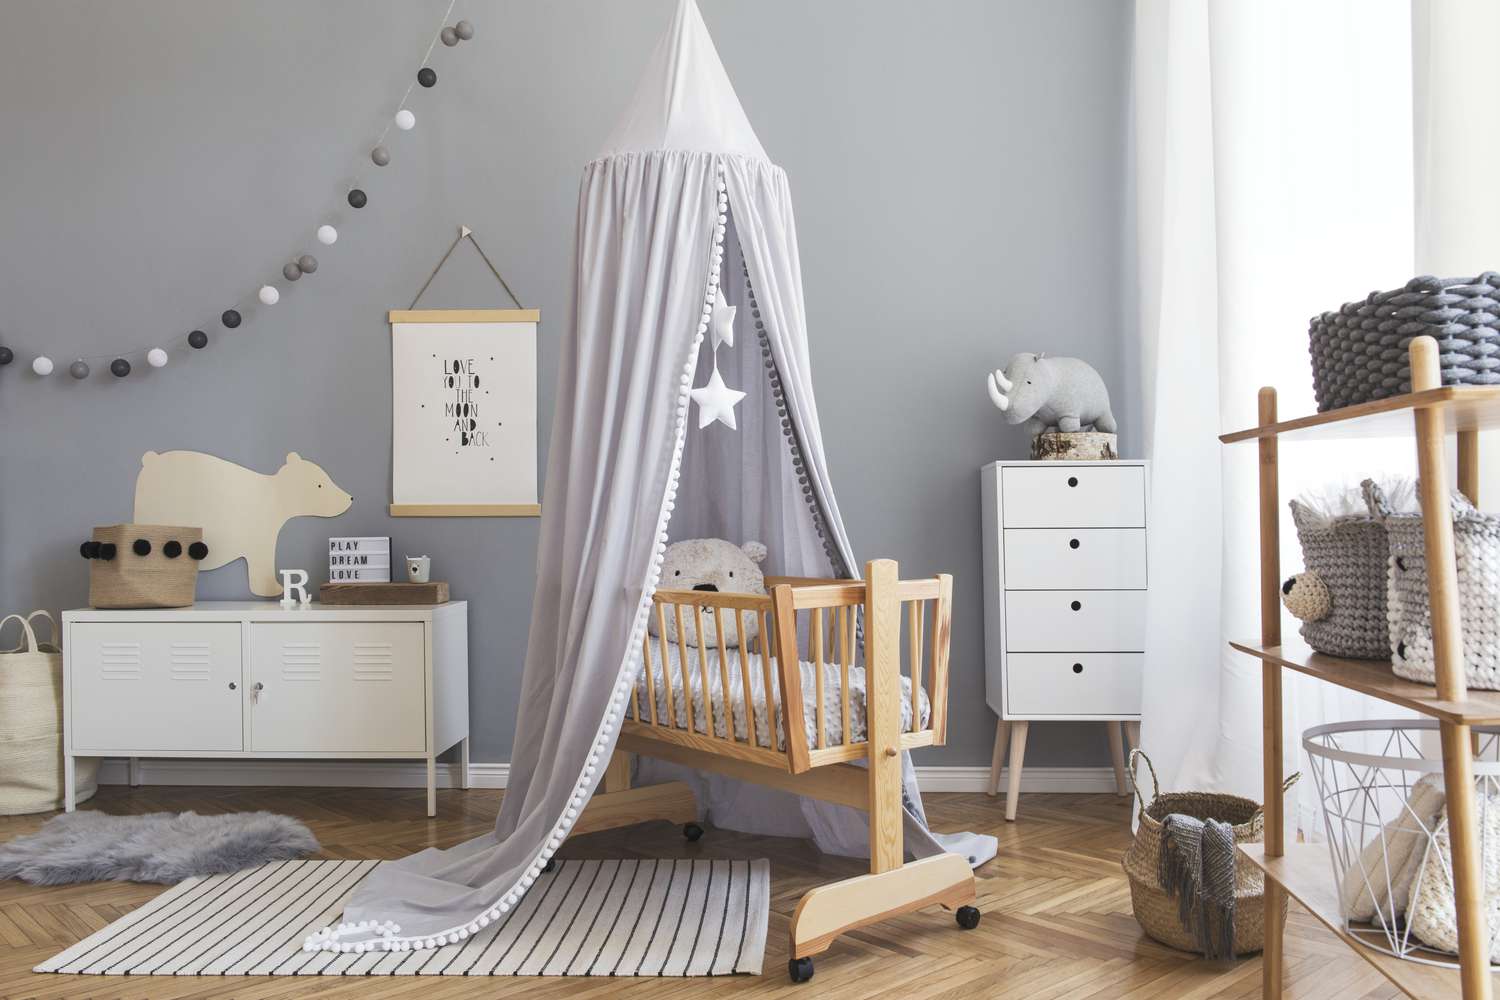 Stilvolle skandinavische Neugeborenenzimmereinrichtung mit Poster, weißen Möbeln, natürlichen Spielsachen, grauem Baldachin mit Sternen und Teddybären. Minimalistische und gemütliche Einrichtung des Kinderzimmers.